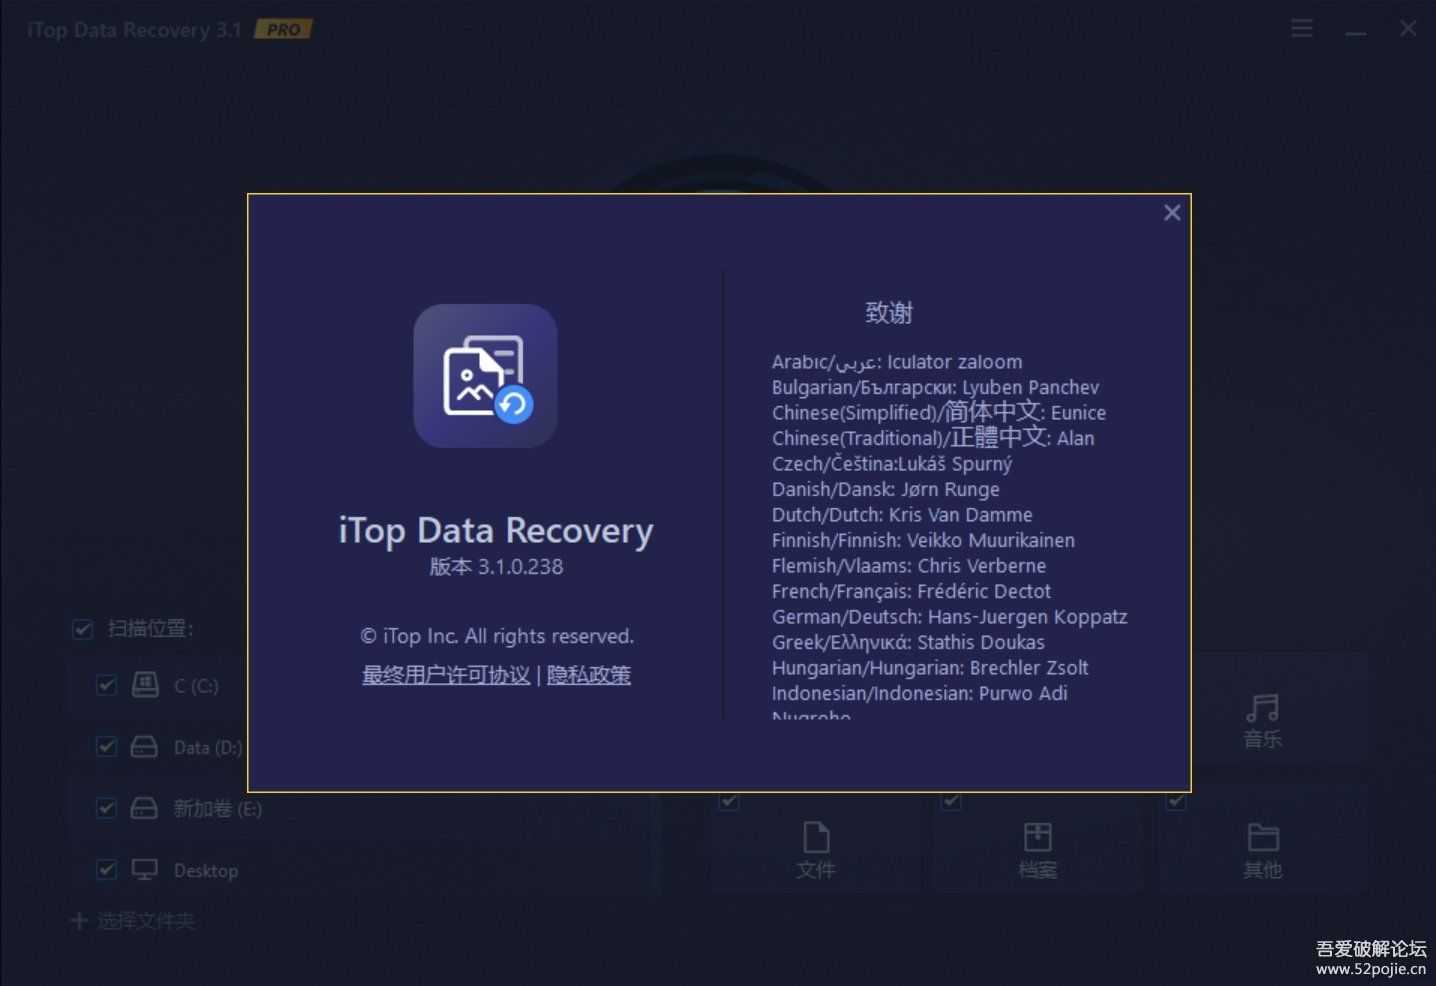 硬盘数据恢复软件iTop_Data_Recovery 3.1 试用170天